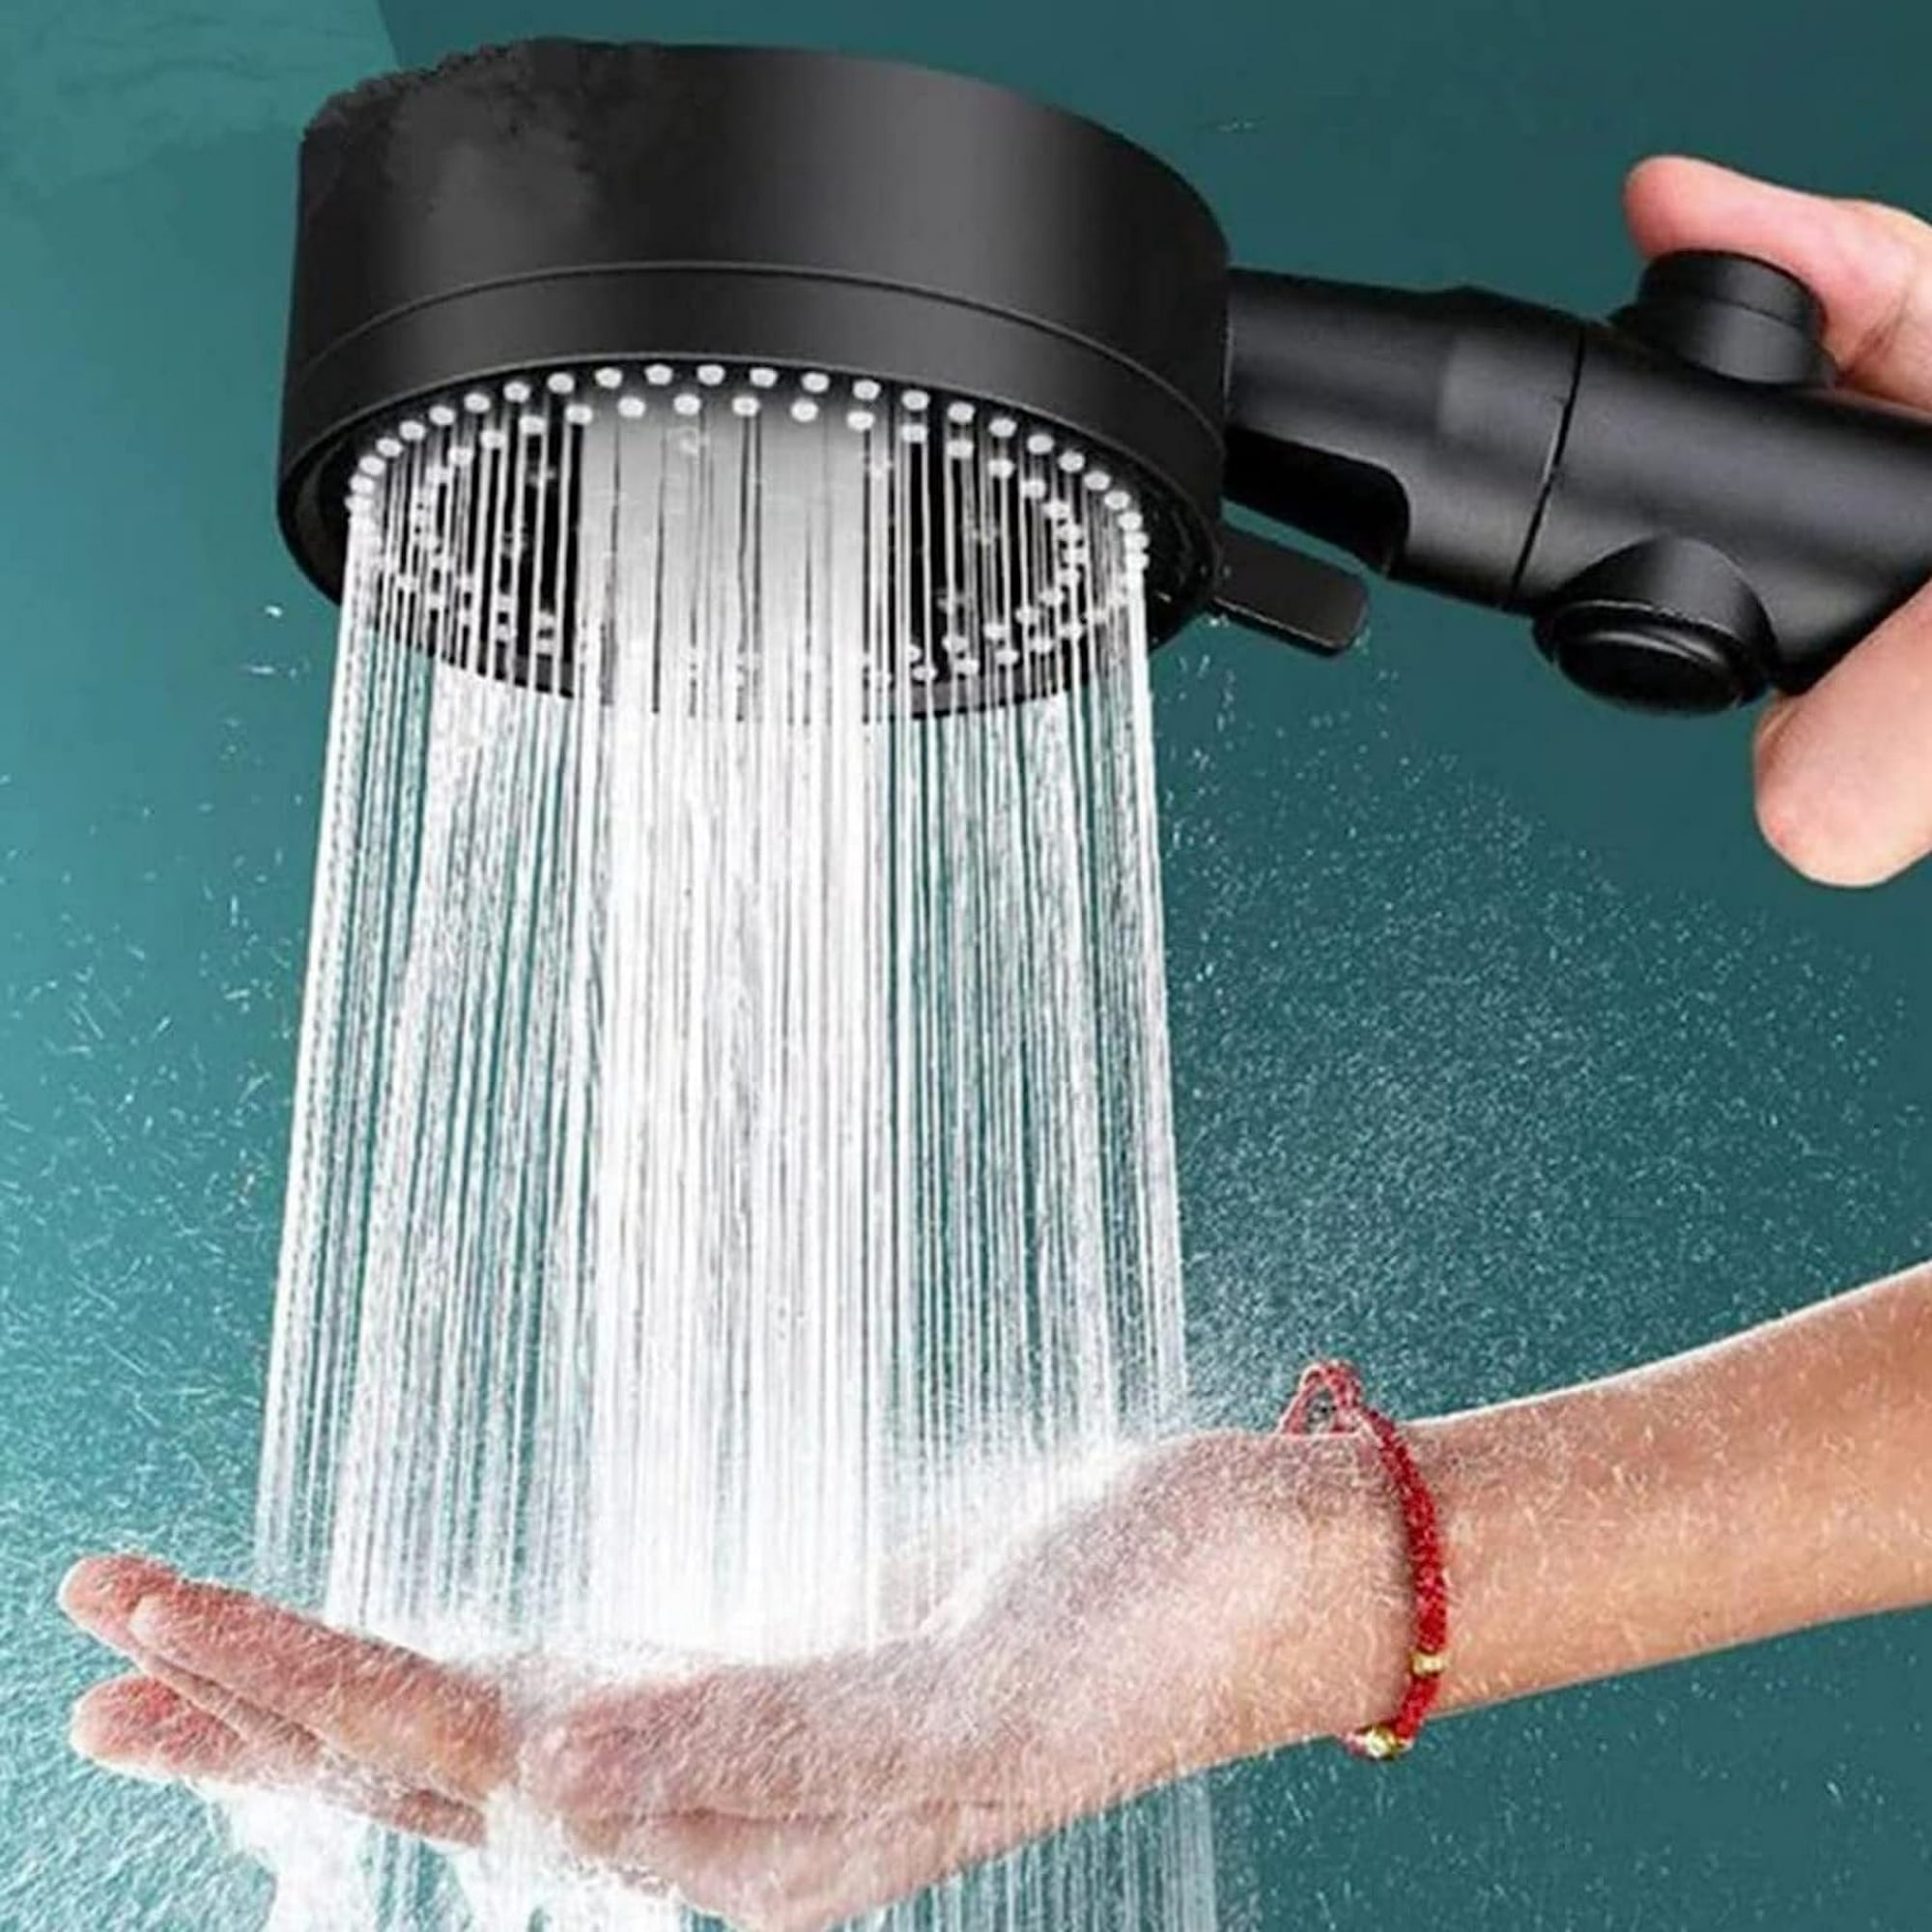 ▷ Chollo Alcachofa de ducha con alta presión por sólo 5,99€ con cupón  descuento (-50%)